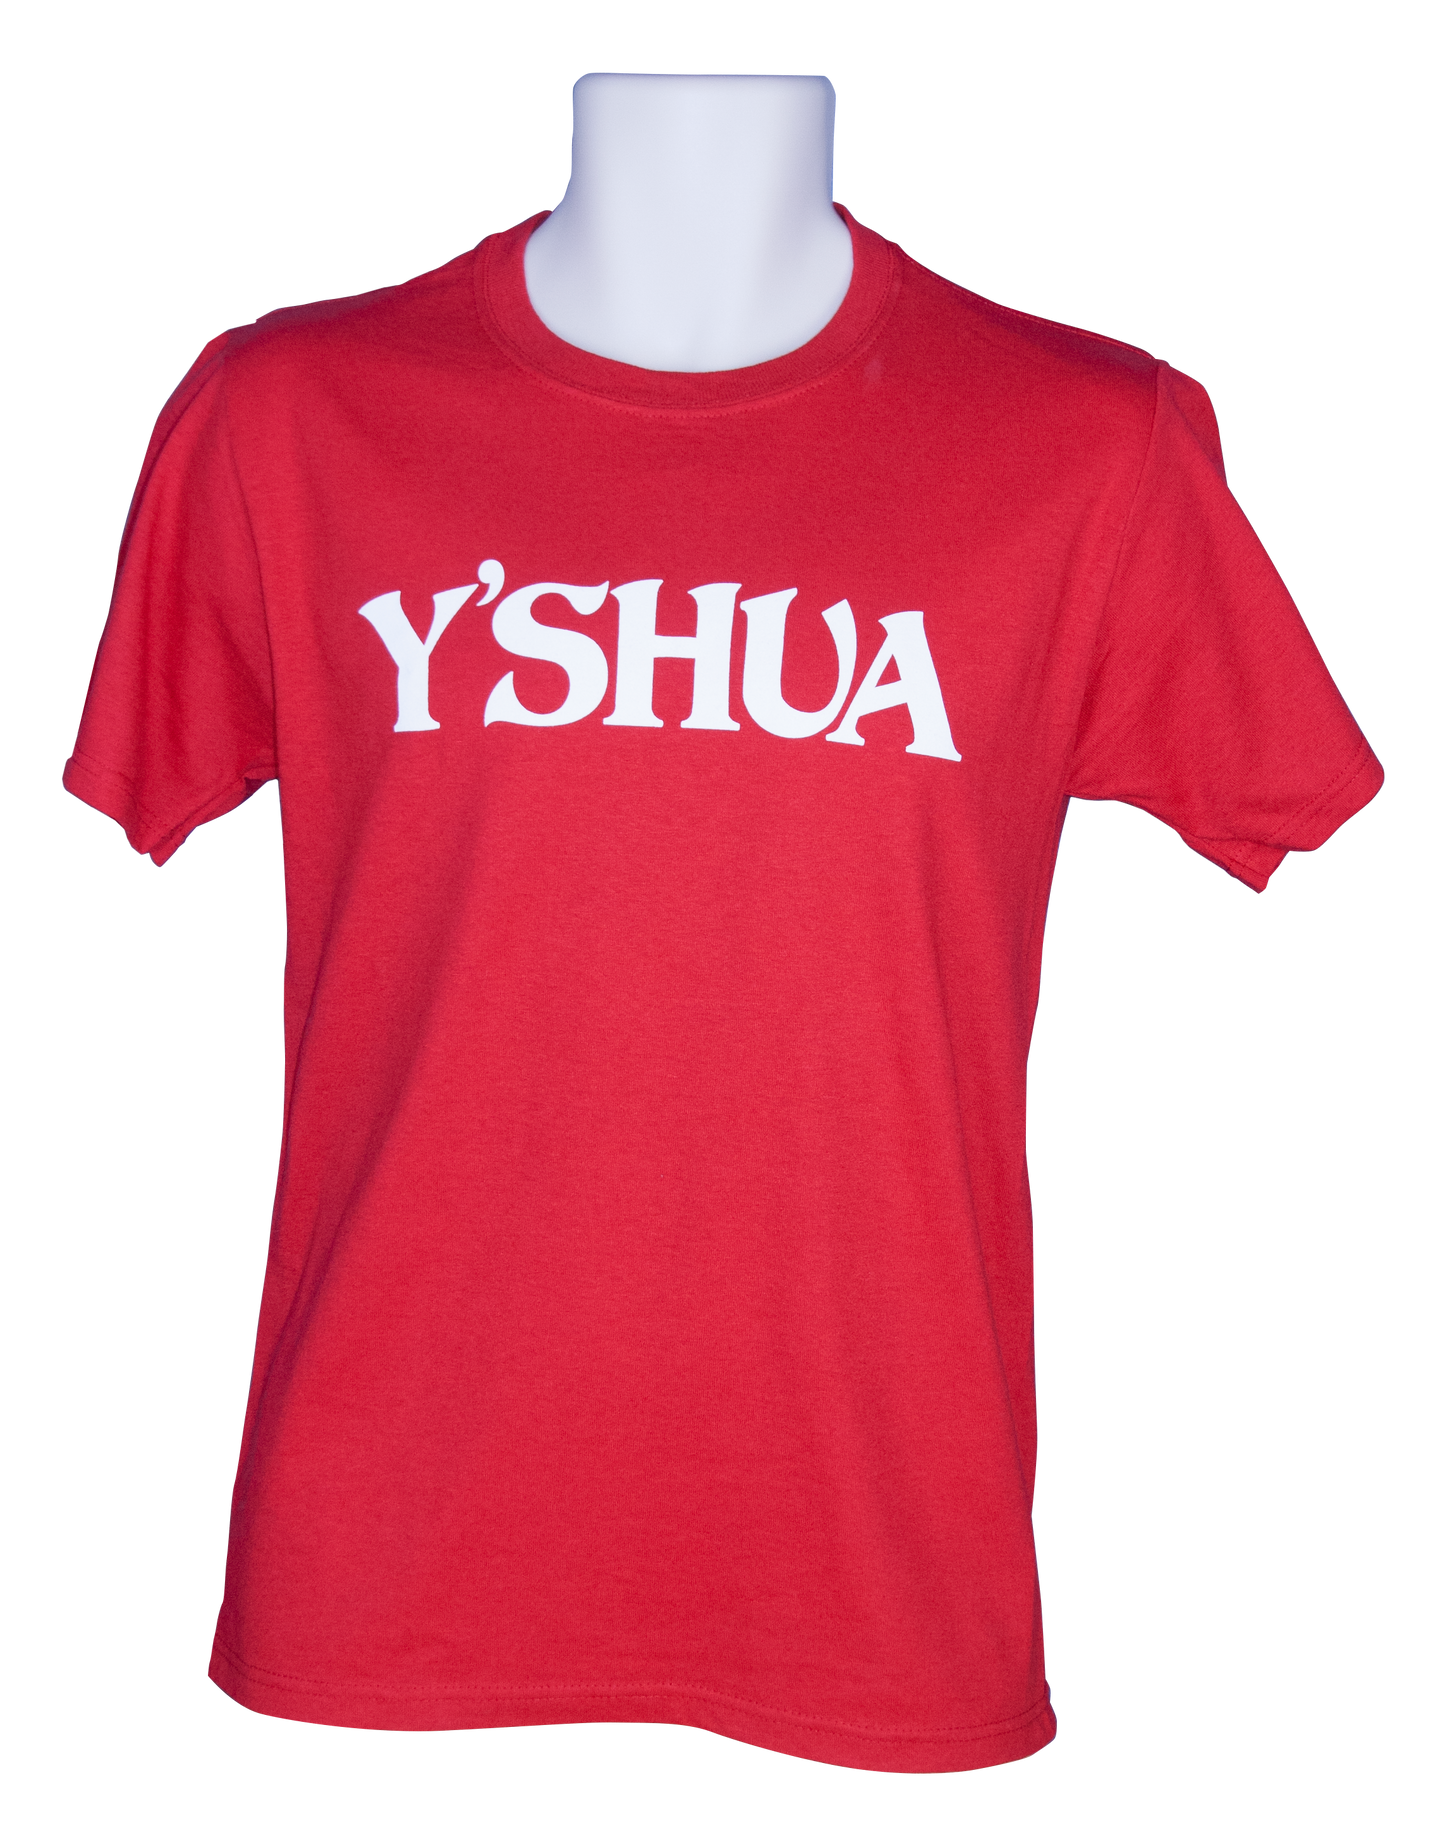 Y'shua T-shirt